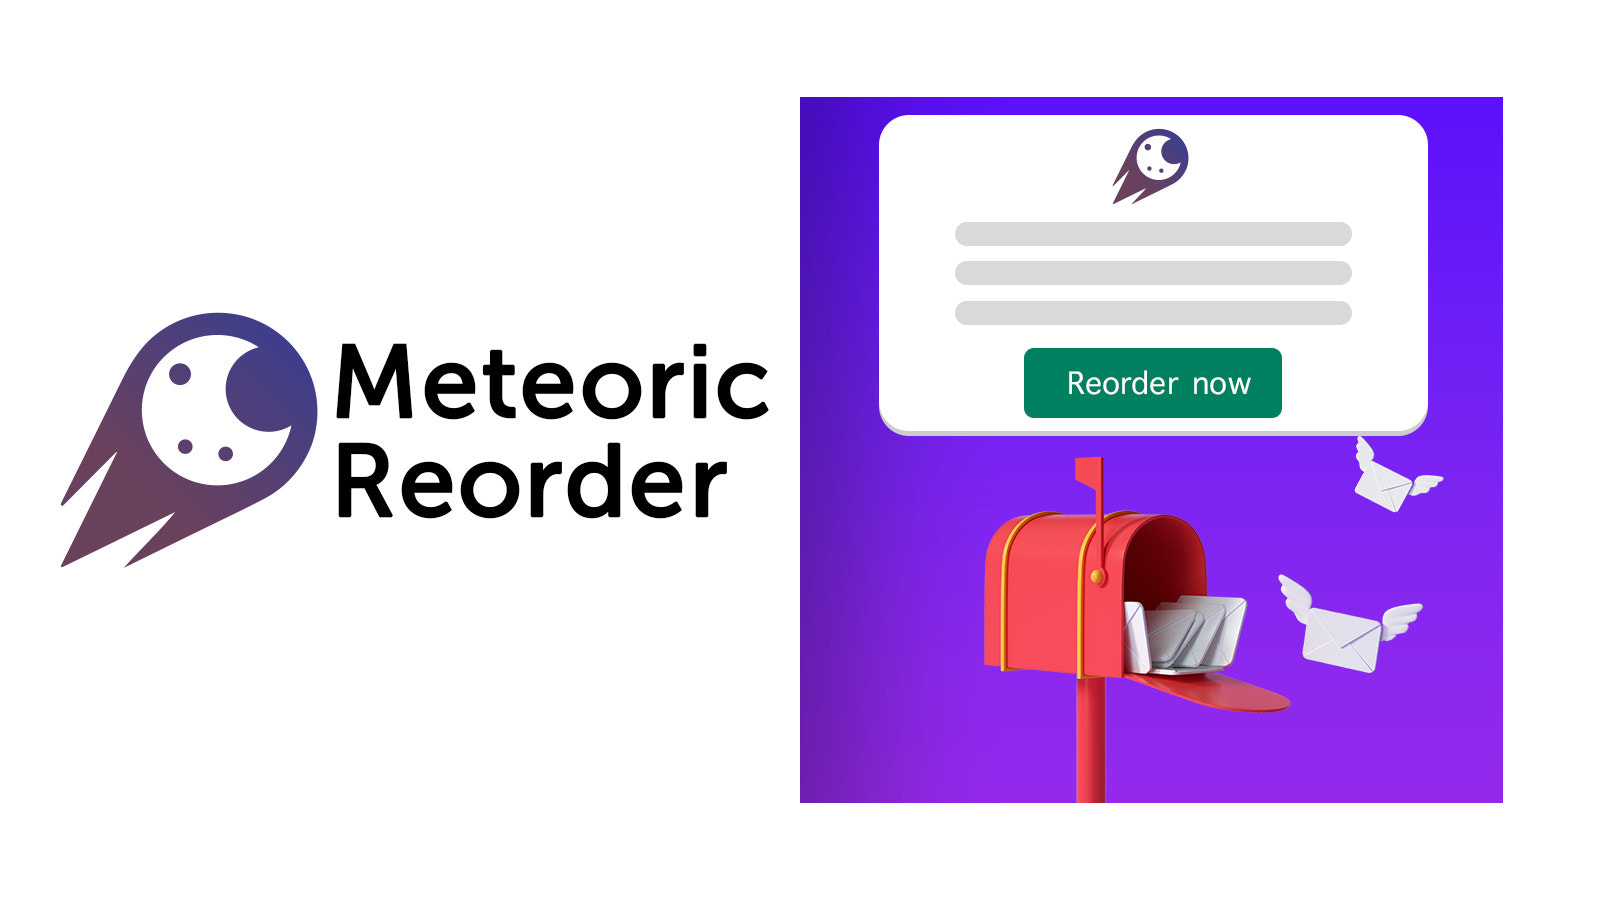 Meteoric Reorder